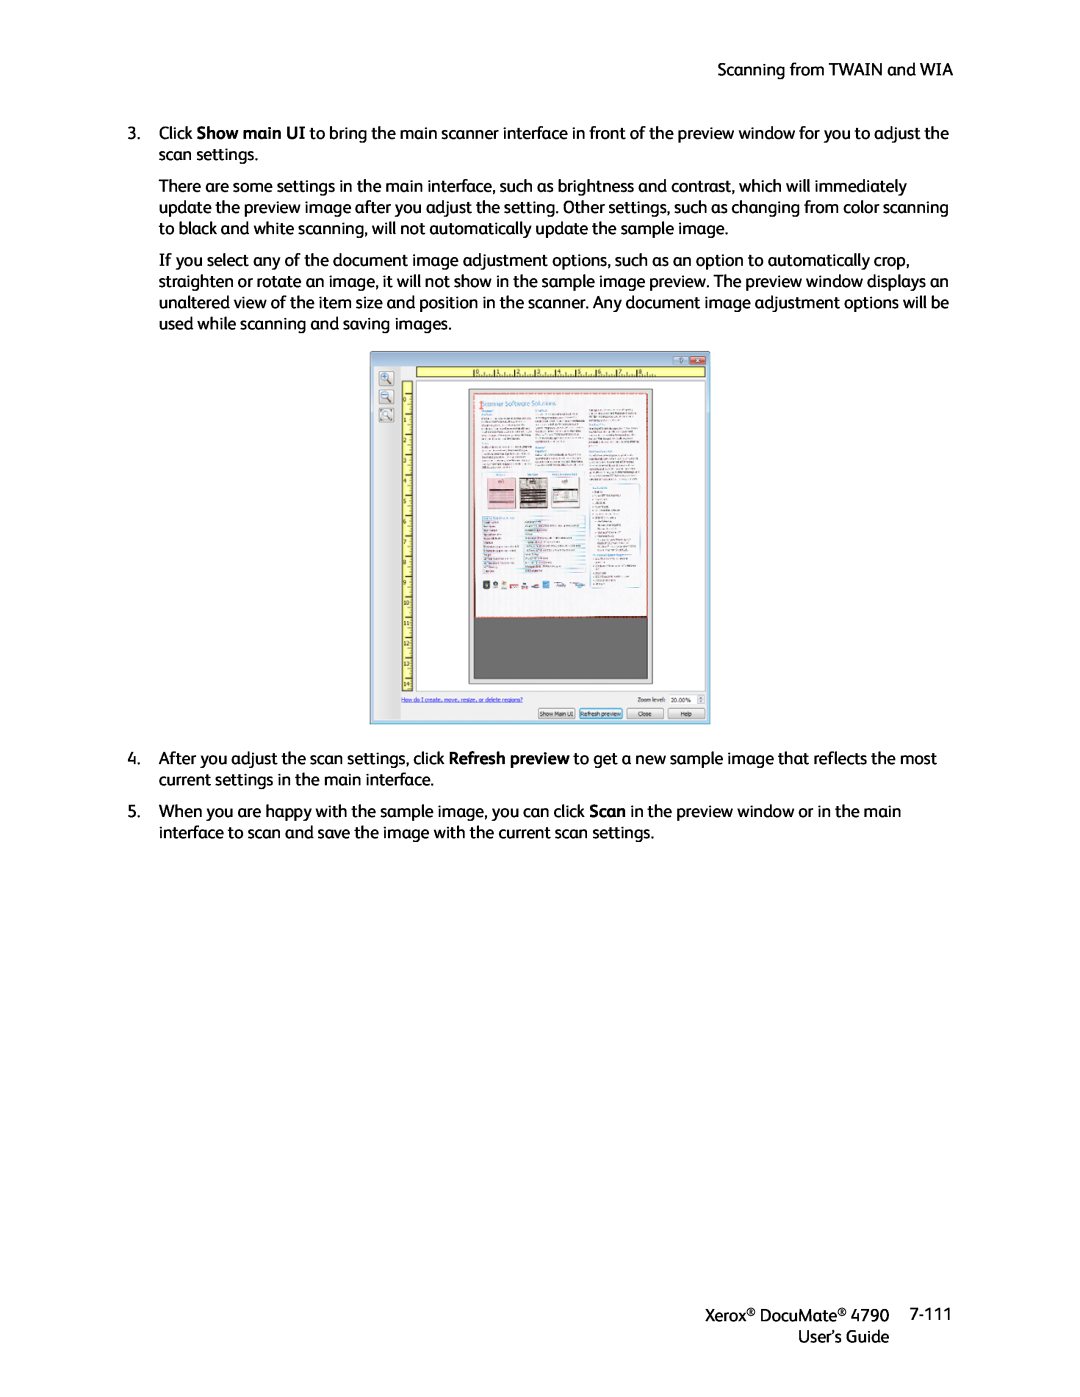 Xerox xerox documate manual Scanning from TWAIN and WIA, Xerox DocuMate, 7-111, User’s Guide 